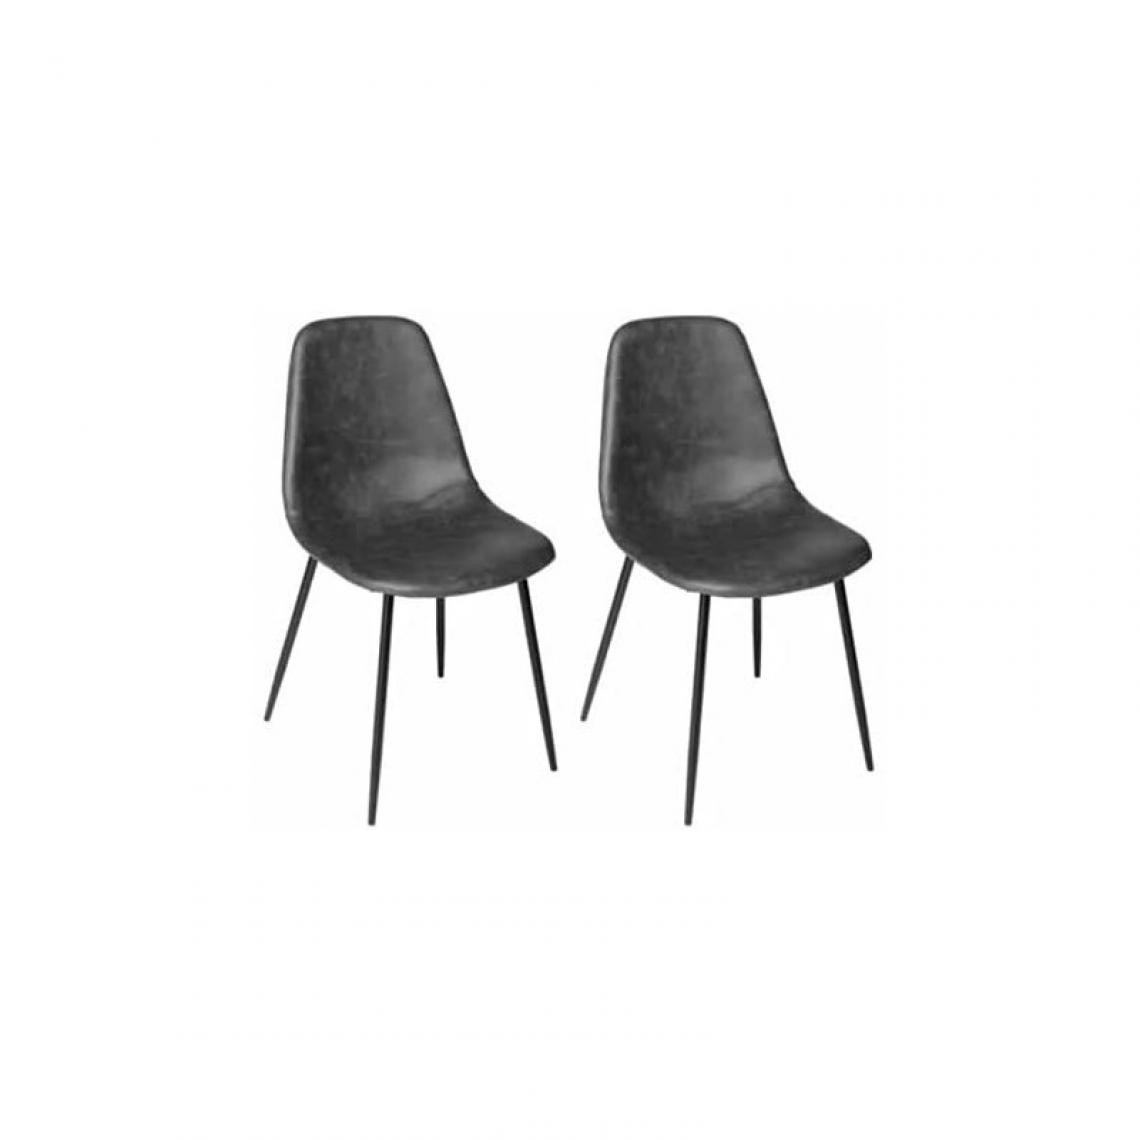 Ac-Deco - Lot de 2 chaises - L 53 x l 43 x H 82 cm - Métal - Gris - Chaises